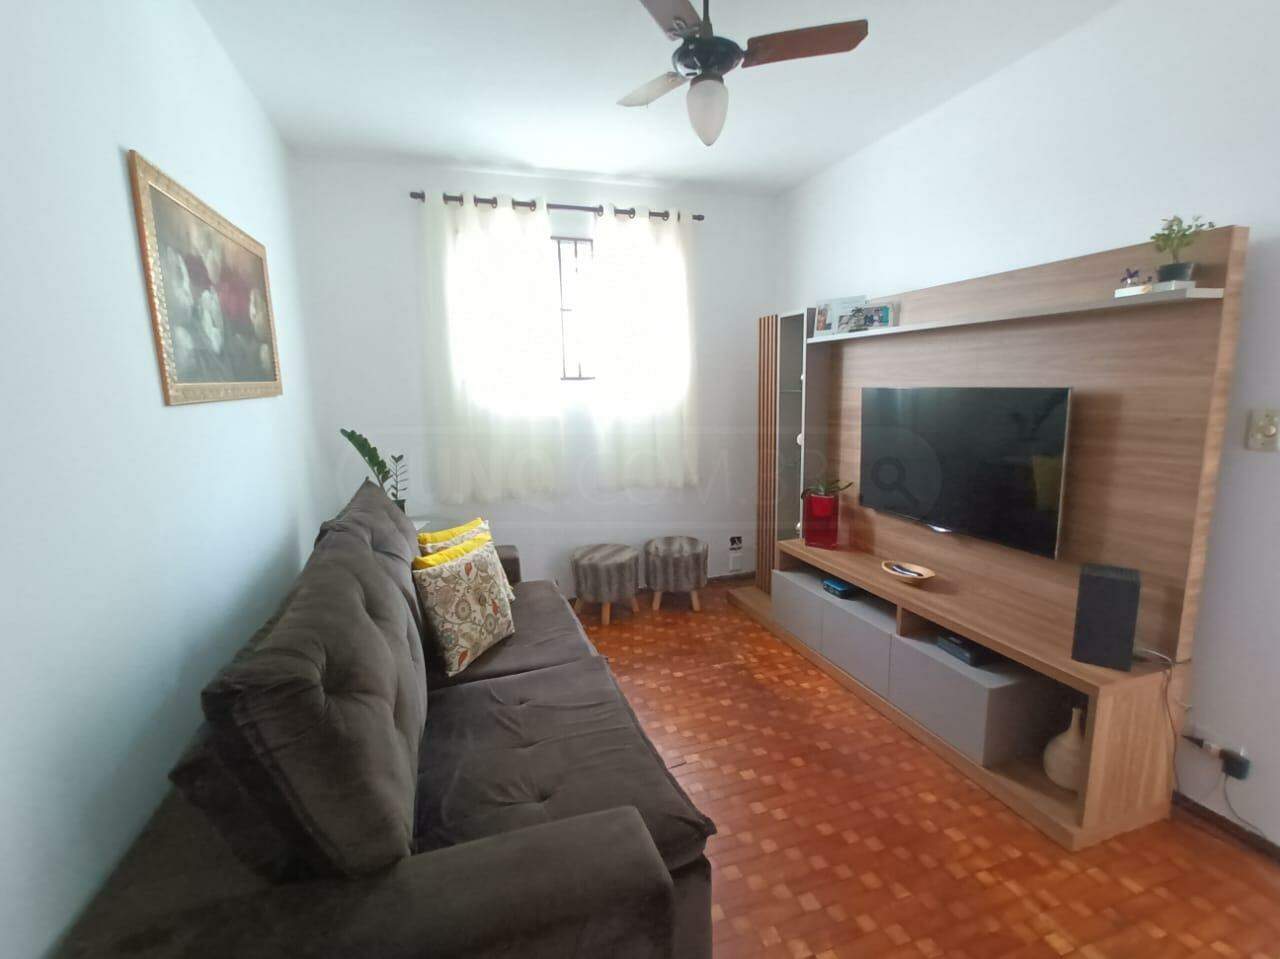 Casa à venda, 2 quartos, 1 vaga, no bairro Vila Independência em Piracicaba - SP